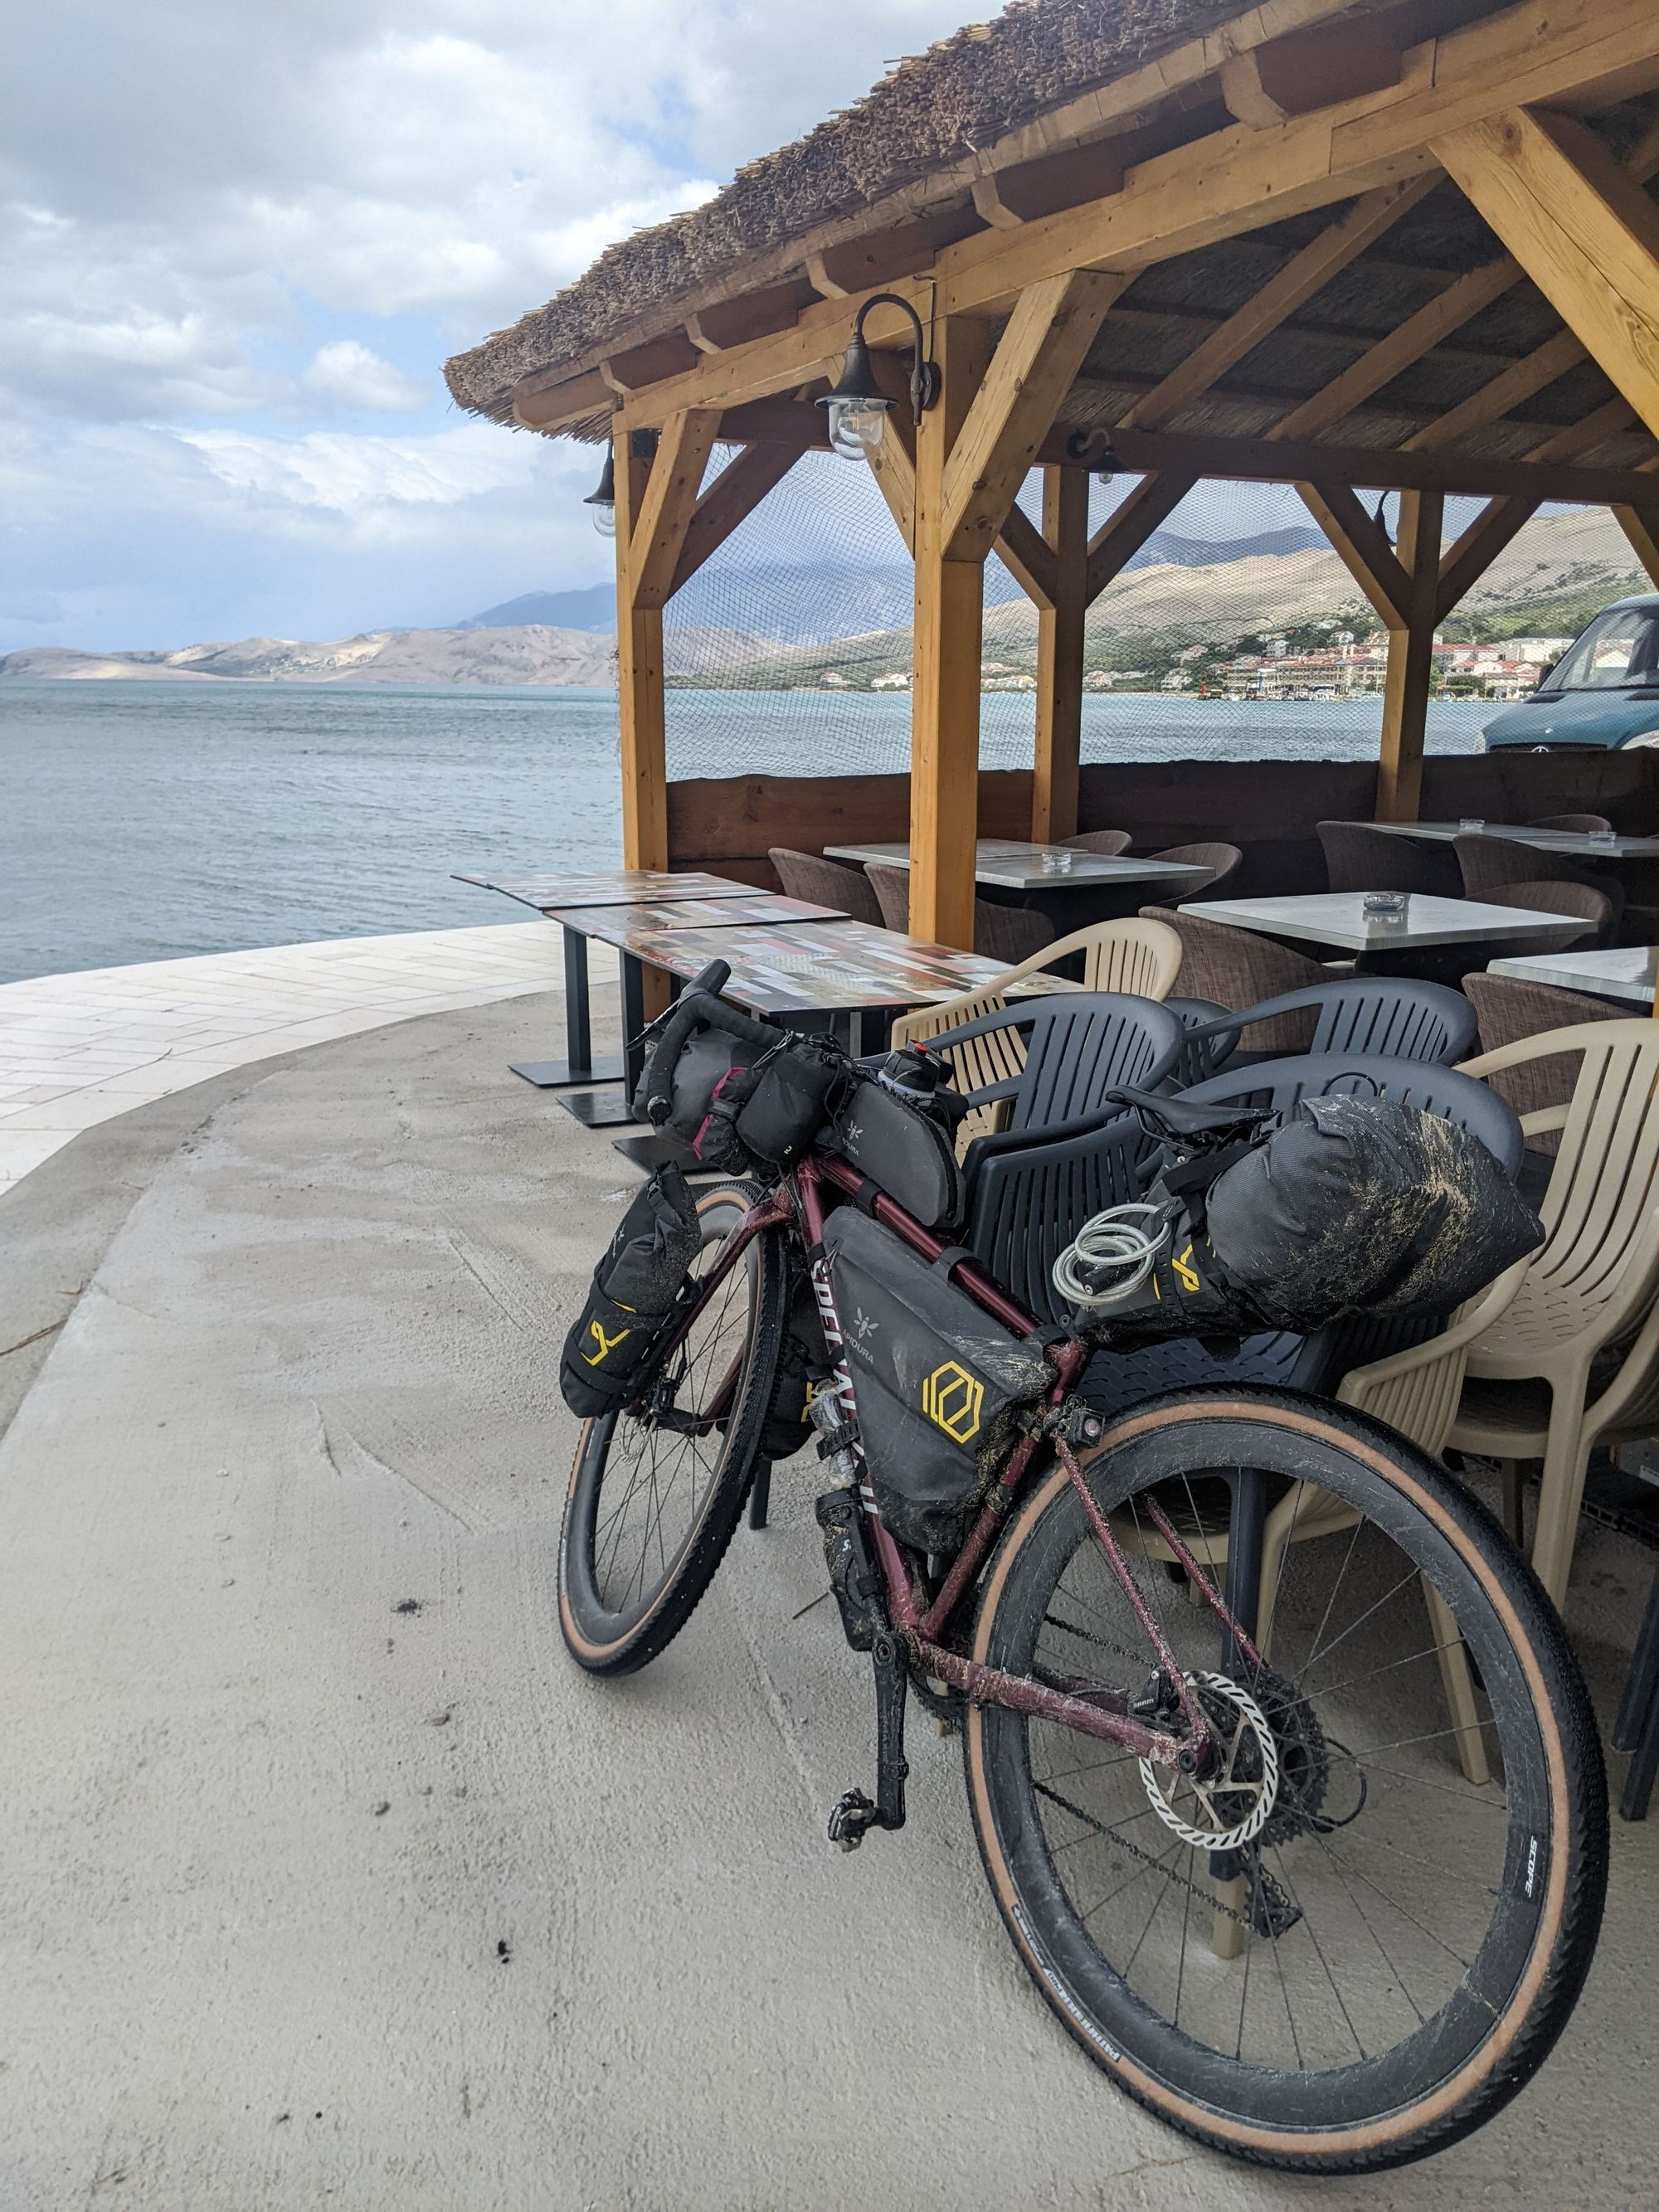 Cycling 2,300km to Croatia